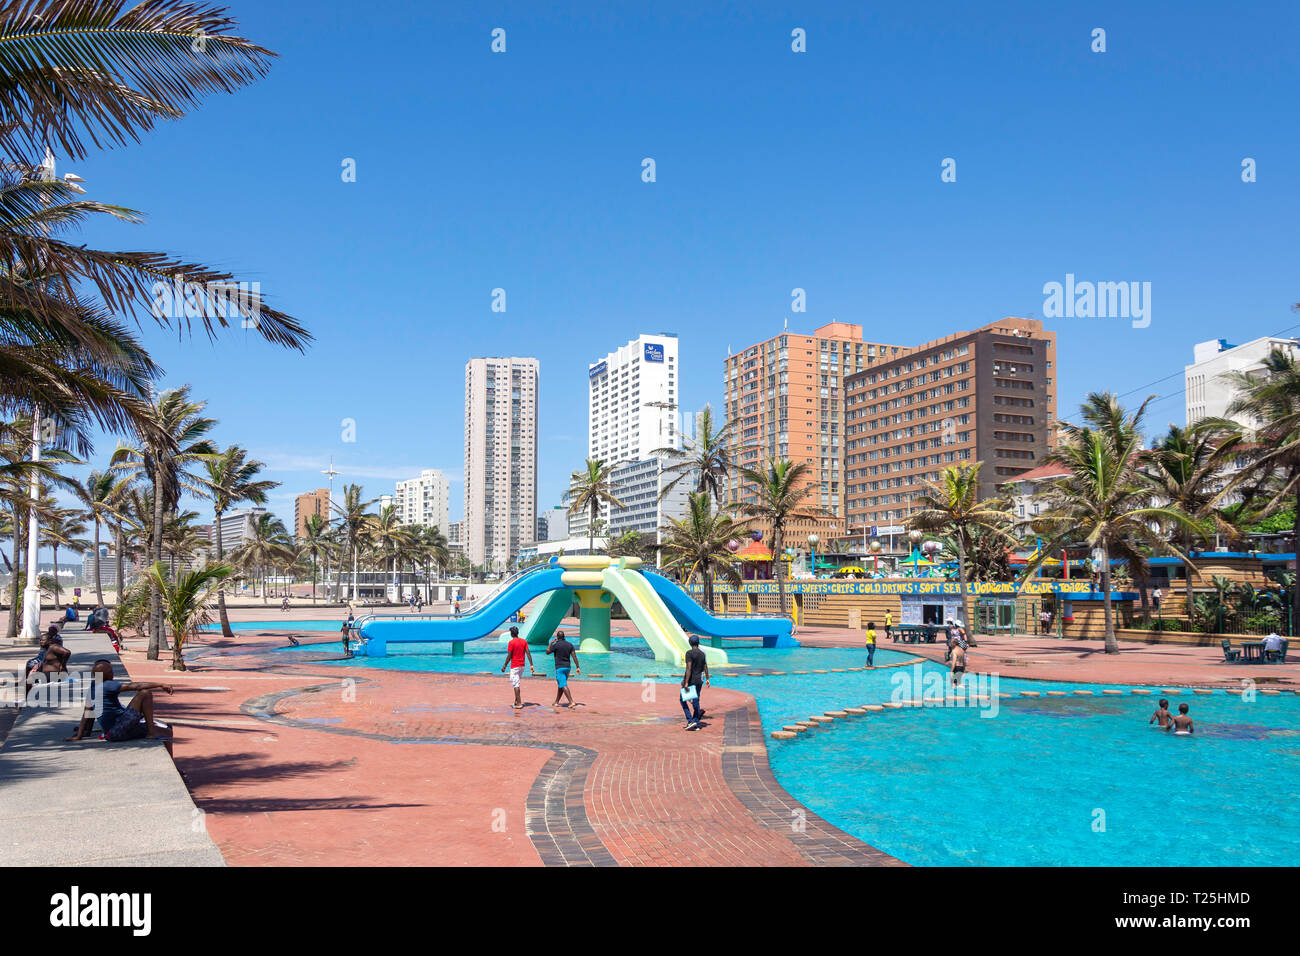 Piscina para niños y zona de juegos en el paseo de la playa, Snell Parade, Playa Nueva, Durban, KwaZulu-Natal, Sudáfrica Foto de stock